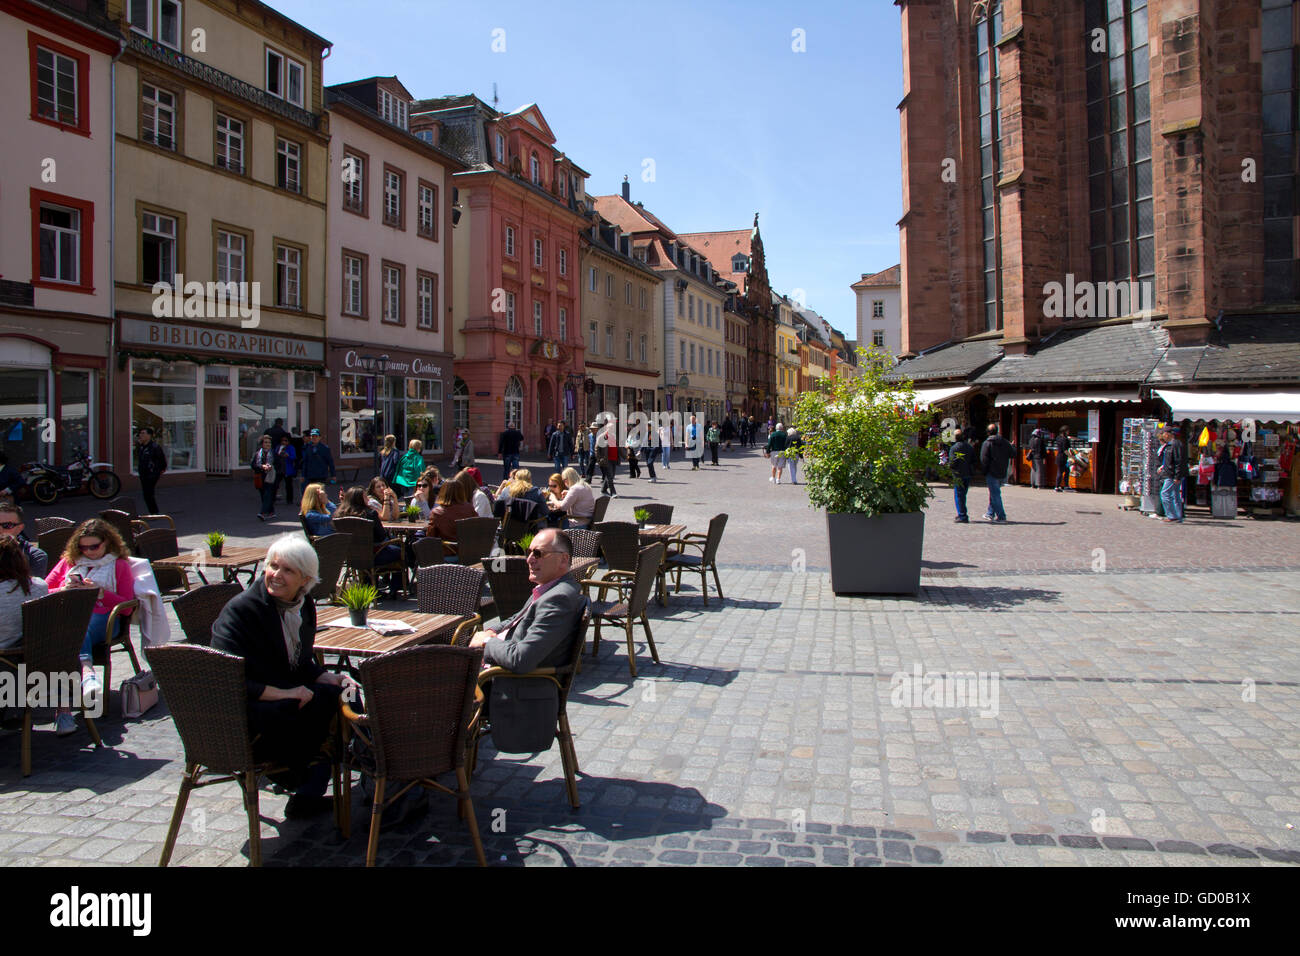 Belebten Marktplatz (oder "Marktplatz") ist umgeben von Geschäften, Cafés und das stattliche Rathaus ("Rathaus") in Heidelberg, Deutschland. Stockfoto